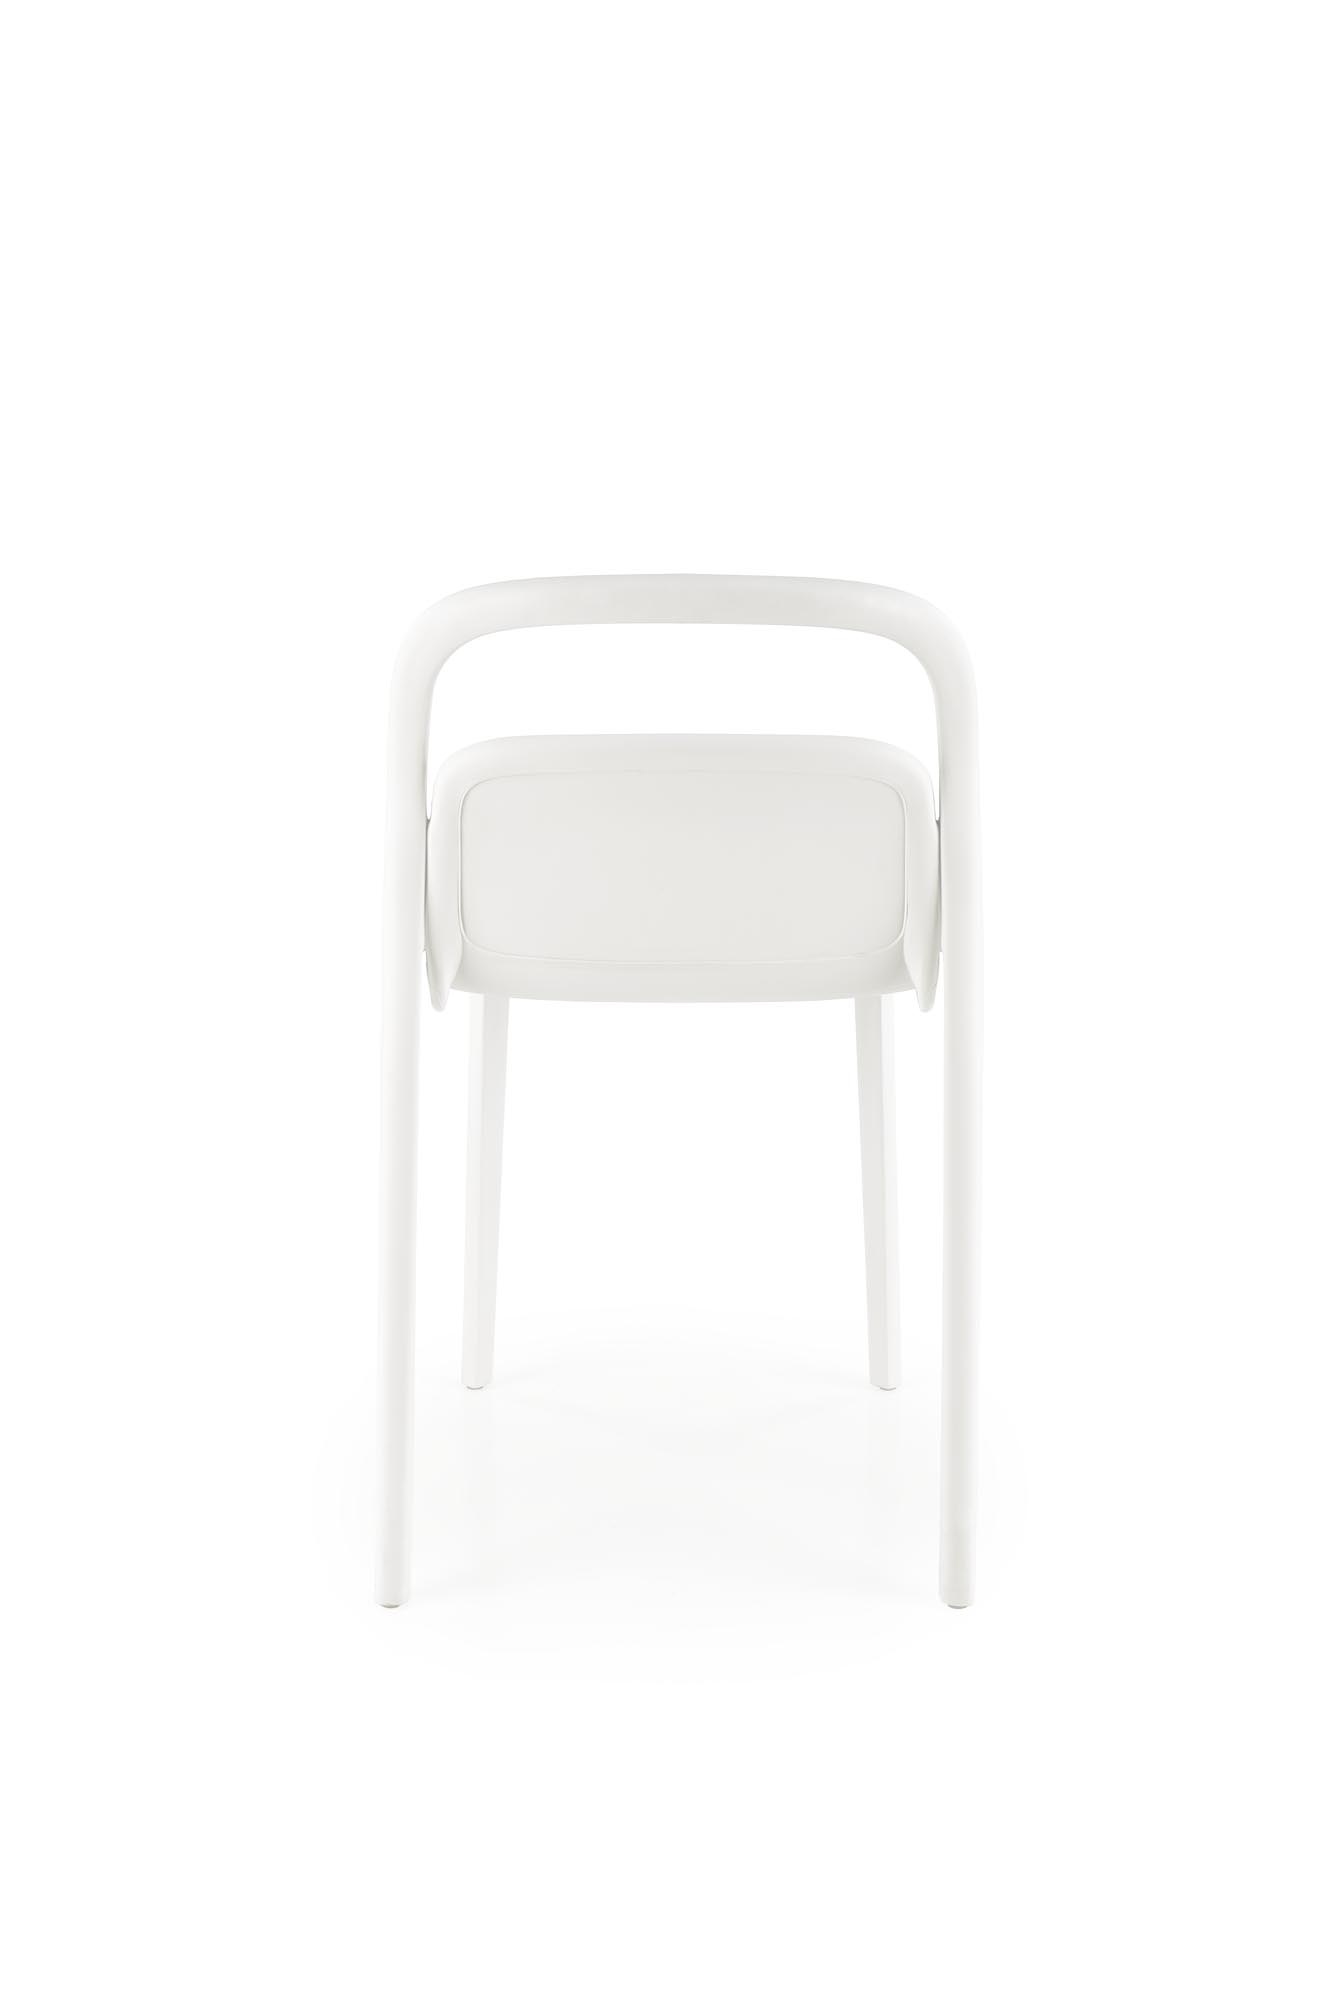 K490 Židle plastik Bílý (1p=4szt) židle z umělé hmoty k490 - Bílý